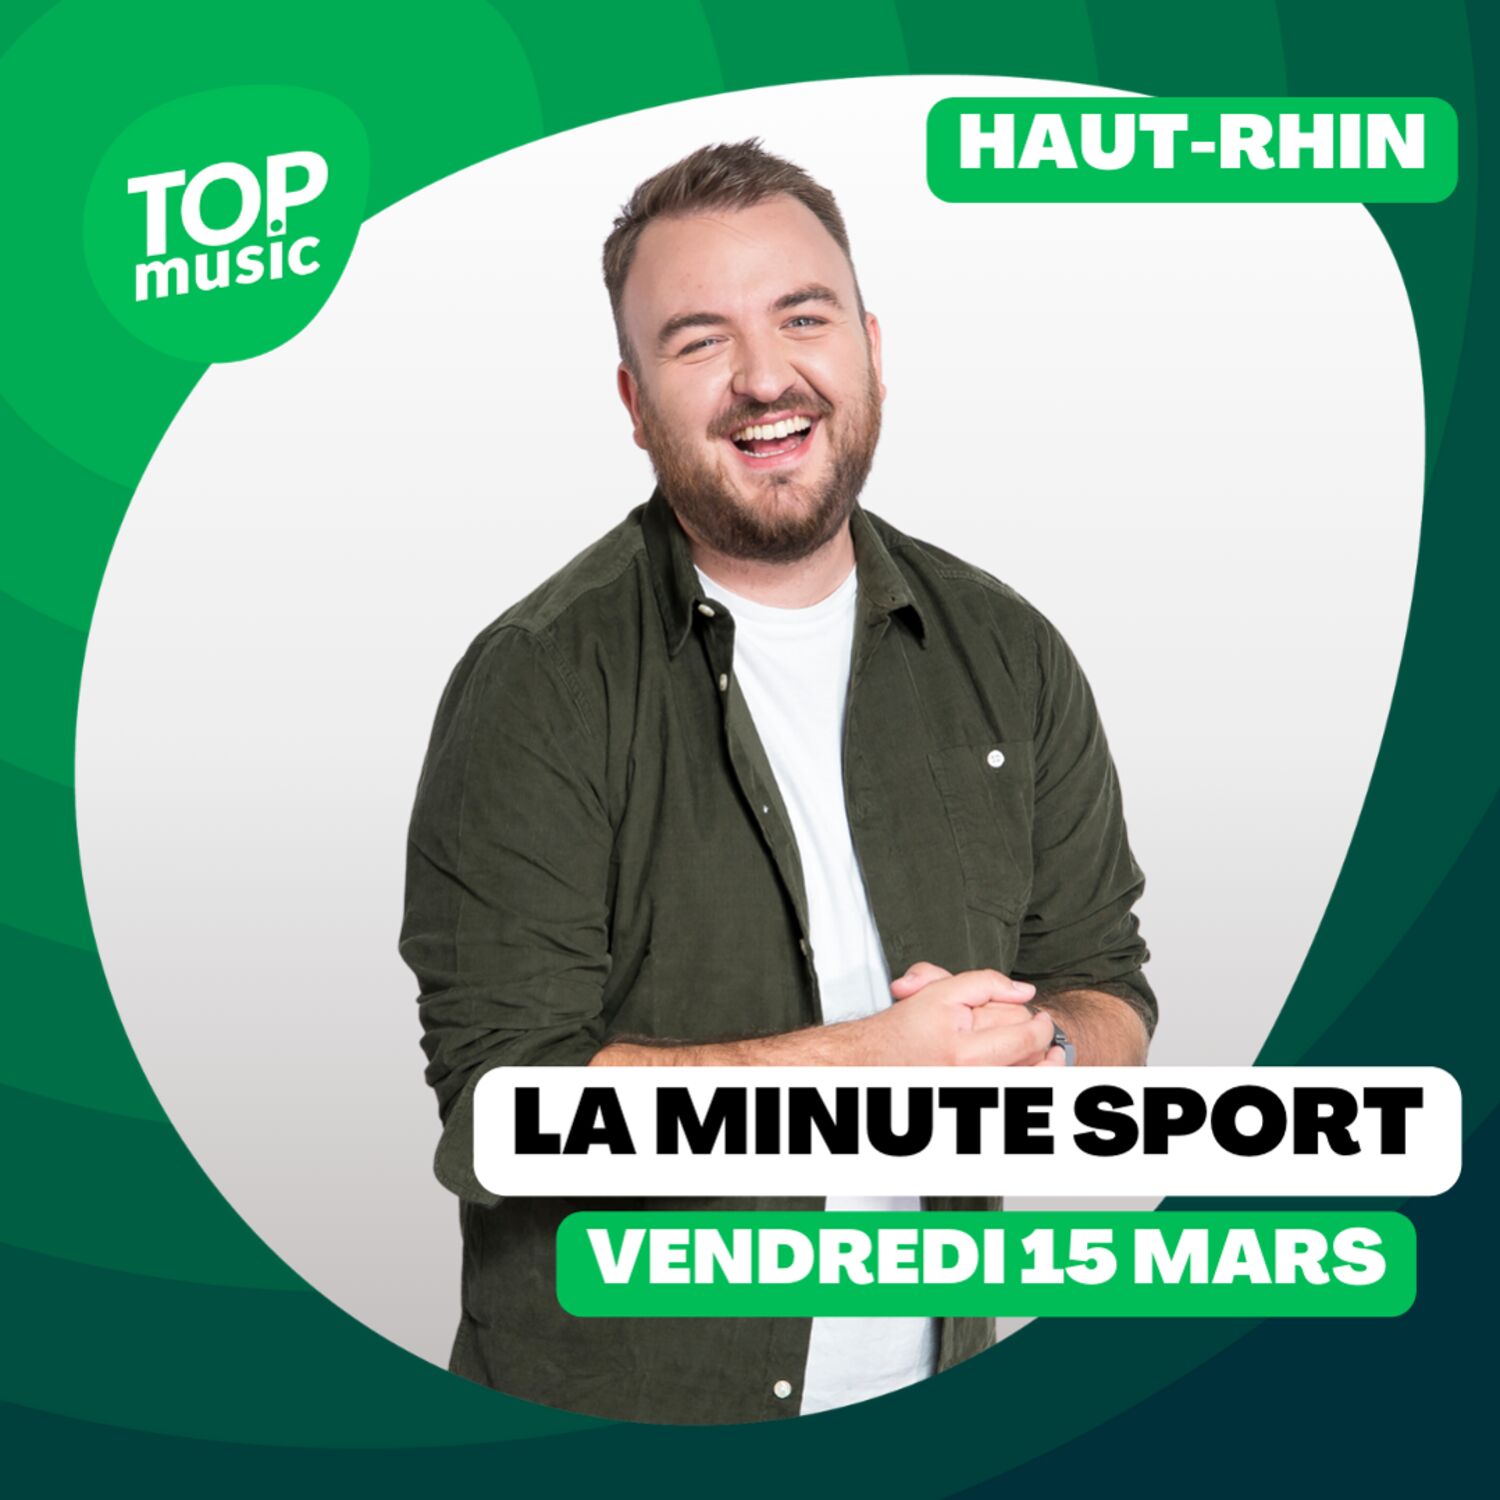 La Minute sport du Haut-Rhin - vendredi 15 mars